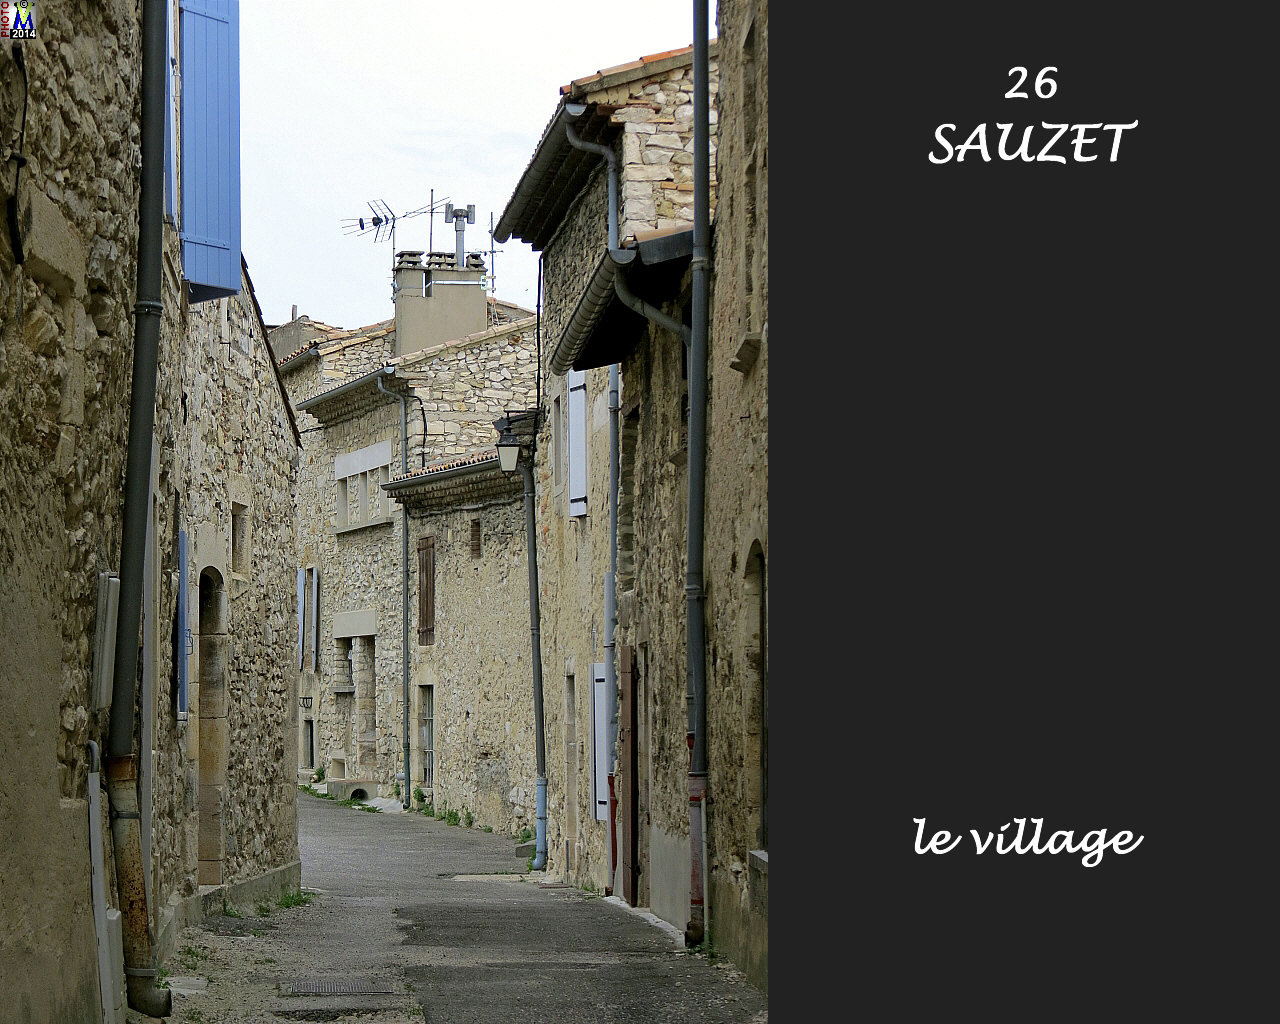 26SAUZET_village_120.jpg